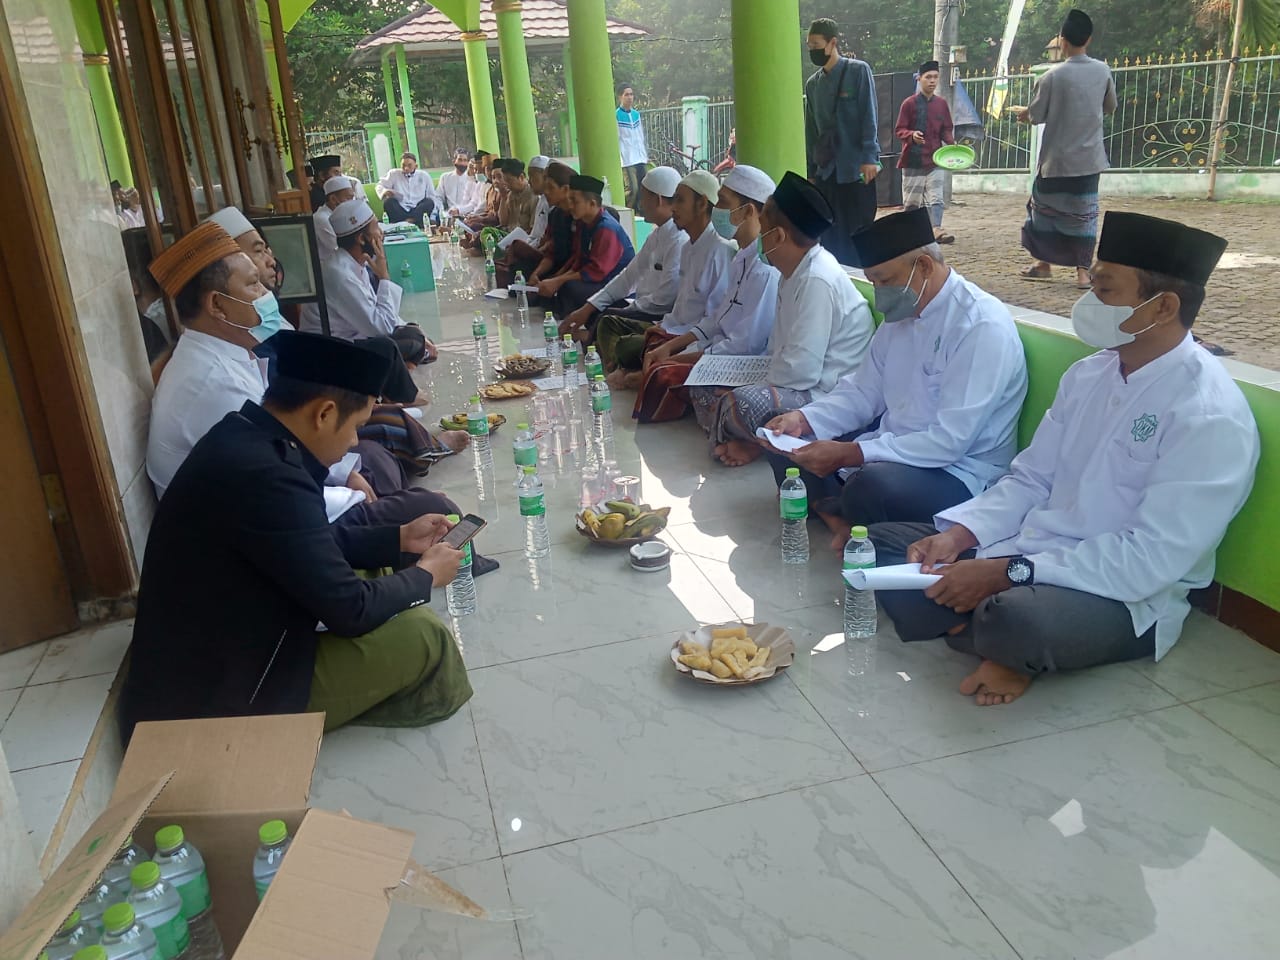 FDKM PAC Desa Pasir Angin Tetap Menjaga Kerukunan Antar Ormas Islam dan Lainnya